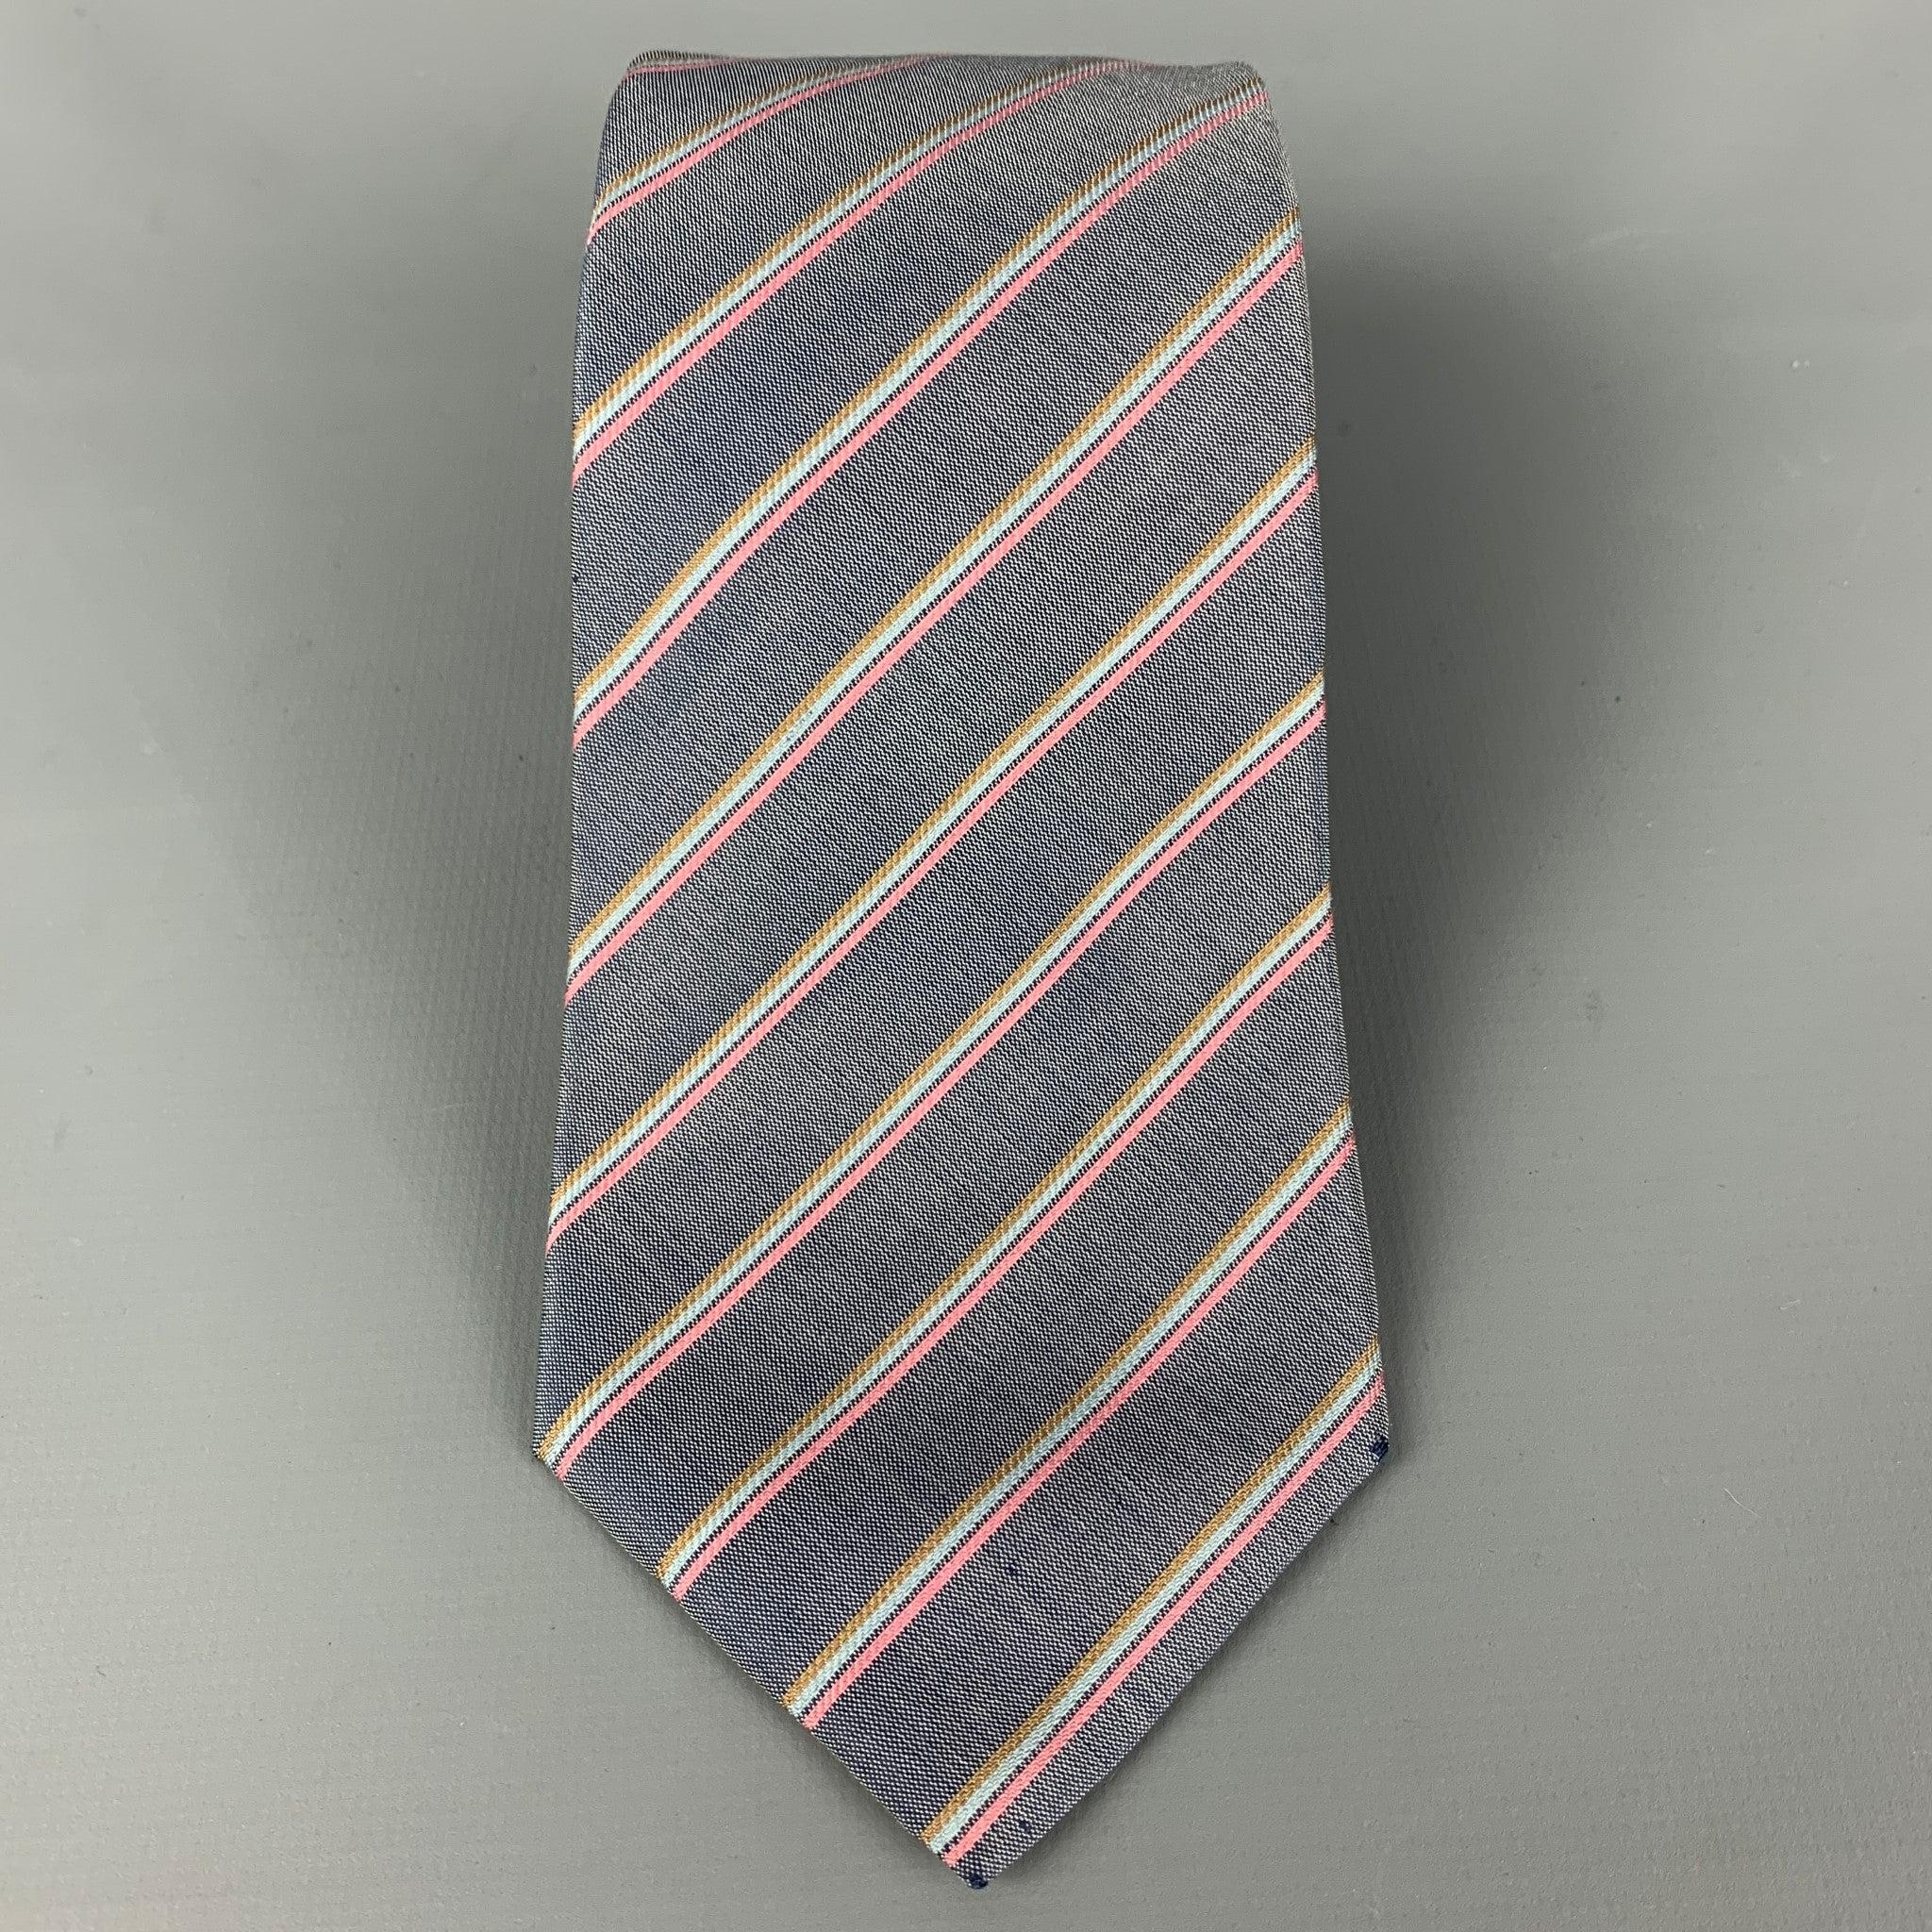 Vintage By ISSEY MIYAKE
Die Krawatte ist aus Seide mit diagonalem Streifendruck.  Sehr guter, gebrauchter Zustand, Breite: 3 Zoll 
  
  
 
Referenz: 118021
Kategorie: Krawatte
Mehr Details
    
Marke:  ISSEY MIYAKE
Farbe:  Grau
Farbe 2: 